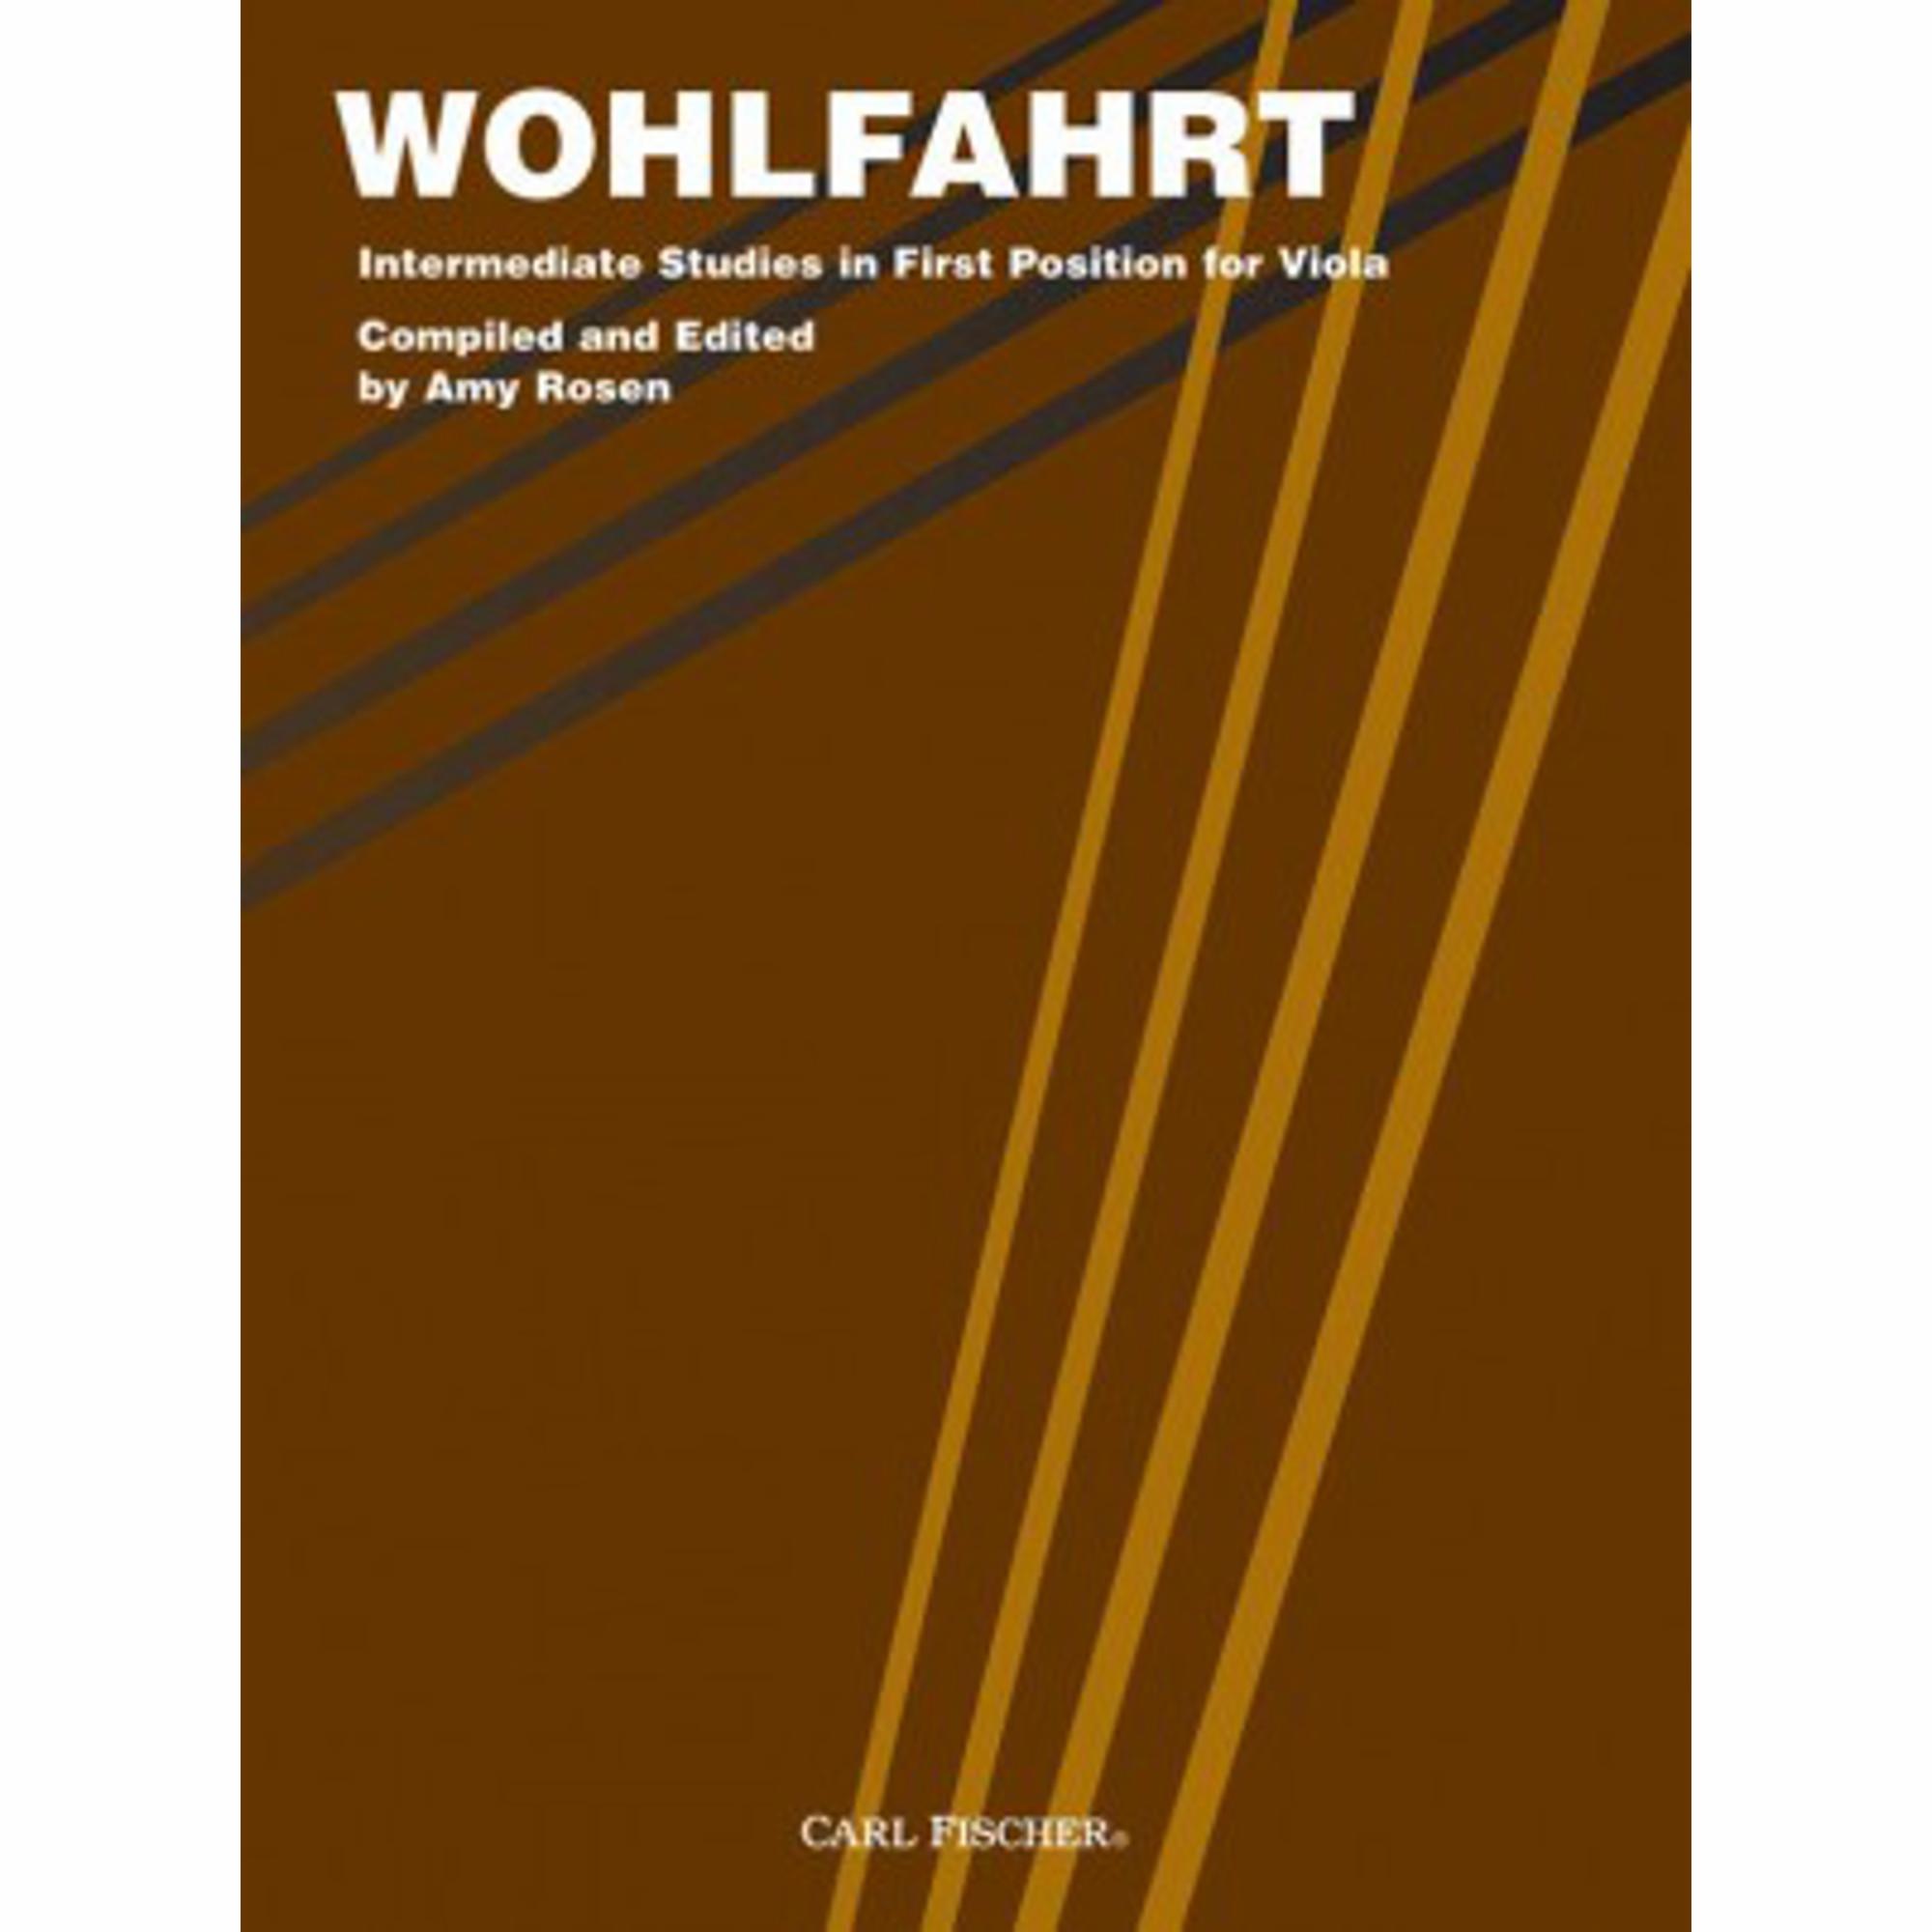 Wohlfahrt -- Intermediate Studies in First Position for Viola